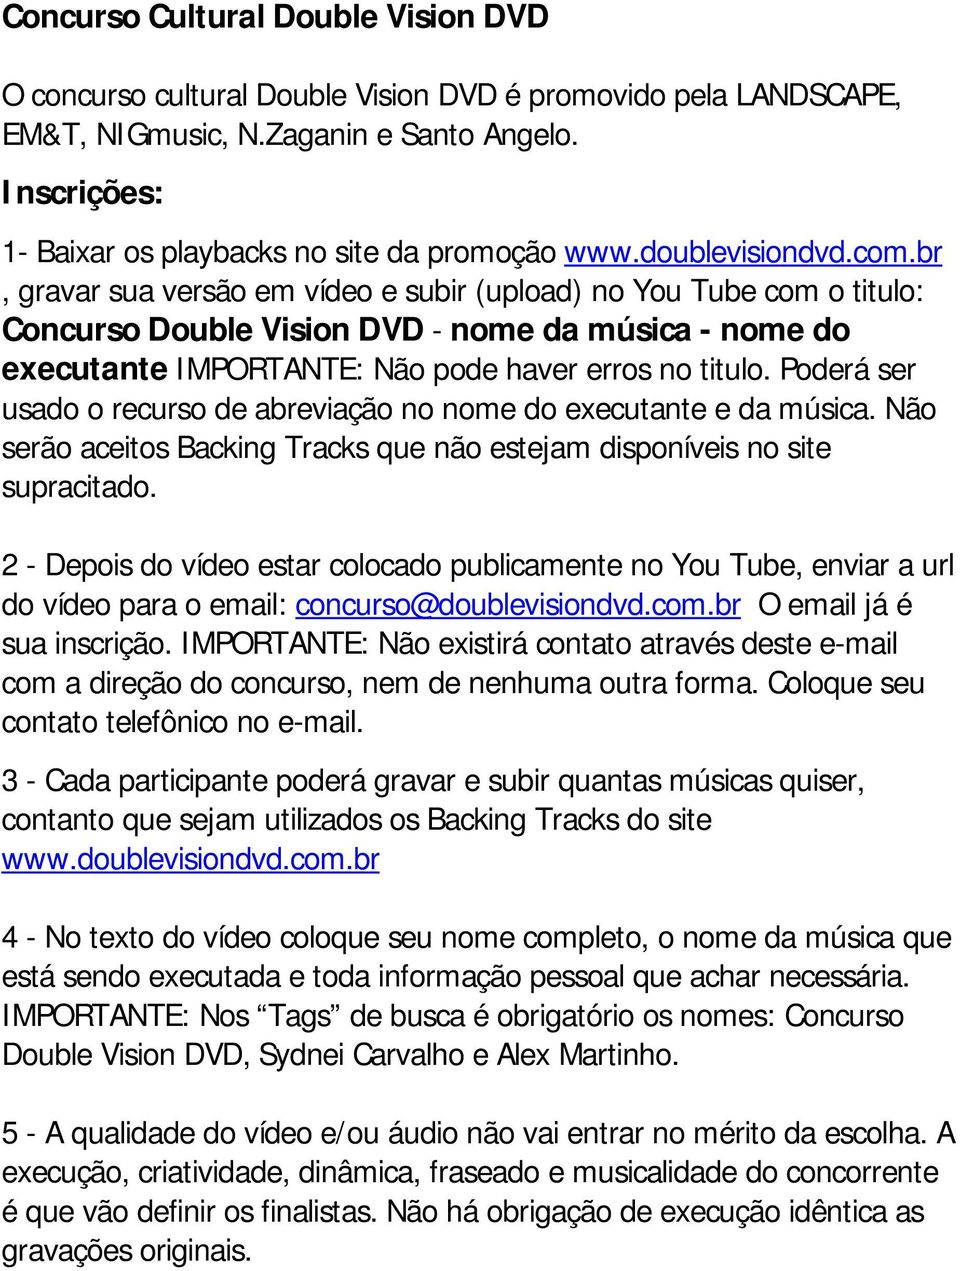 br, gravar sua versão em vídeo e subir (upload) no You Tube com o titulo: Concurso Double Vision DVD - nome da música - nome do executante IMPORTANTE: Não pode haver erros no titulo.